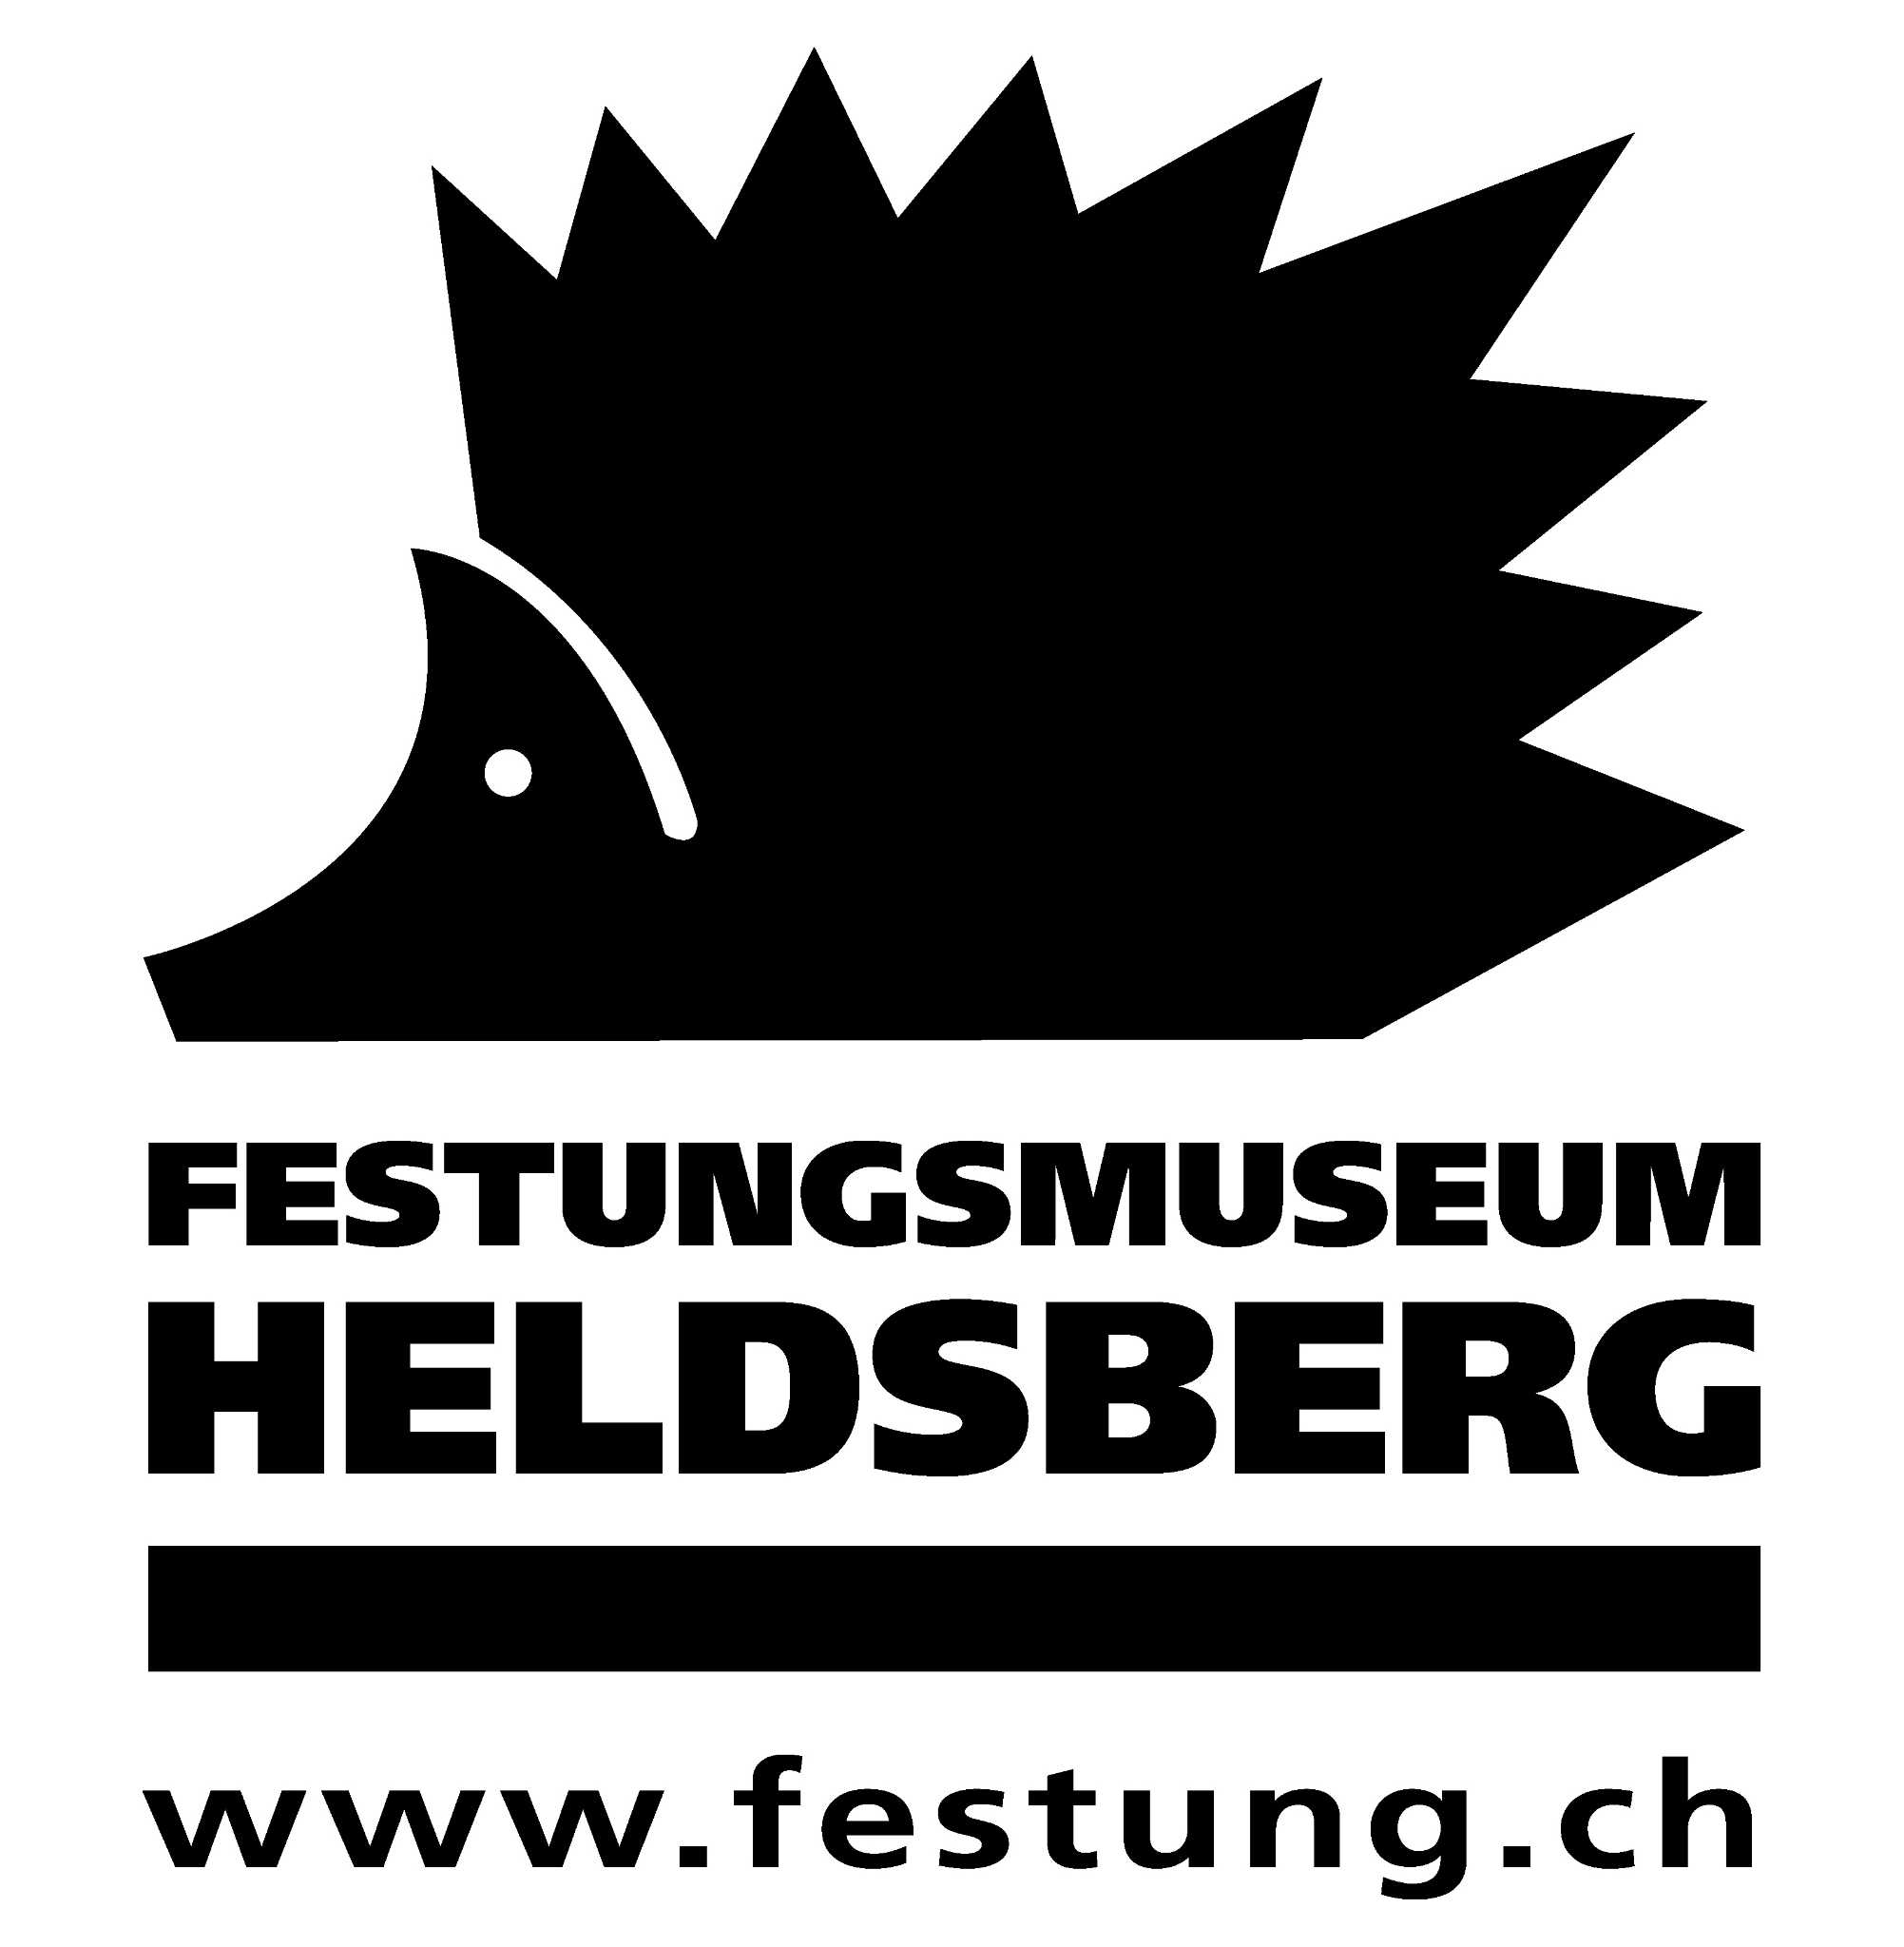 Festungsmuseum Heldsberg